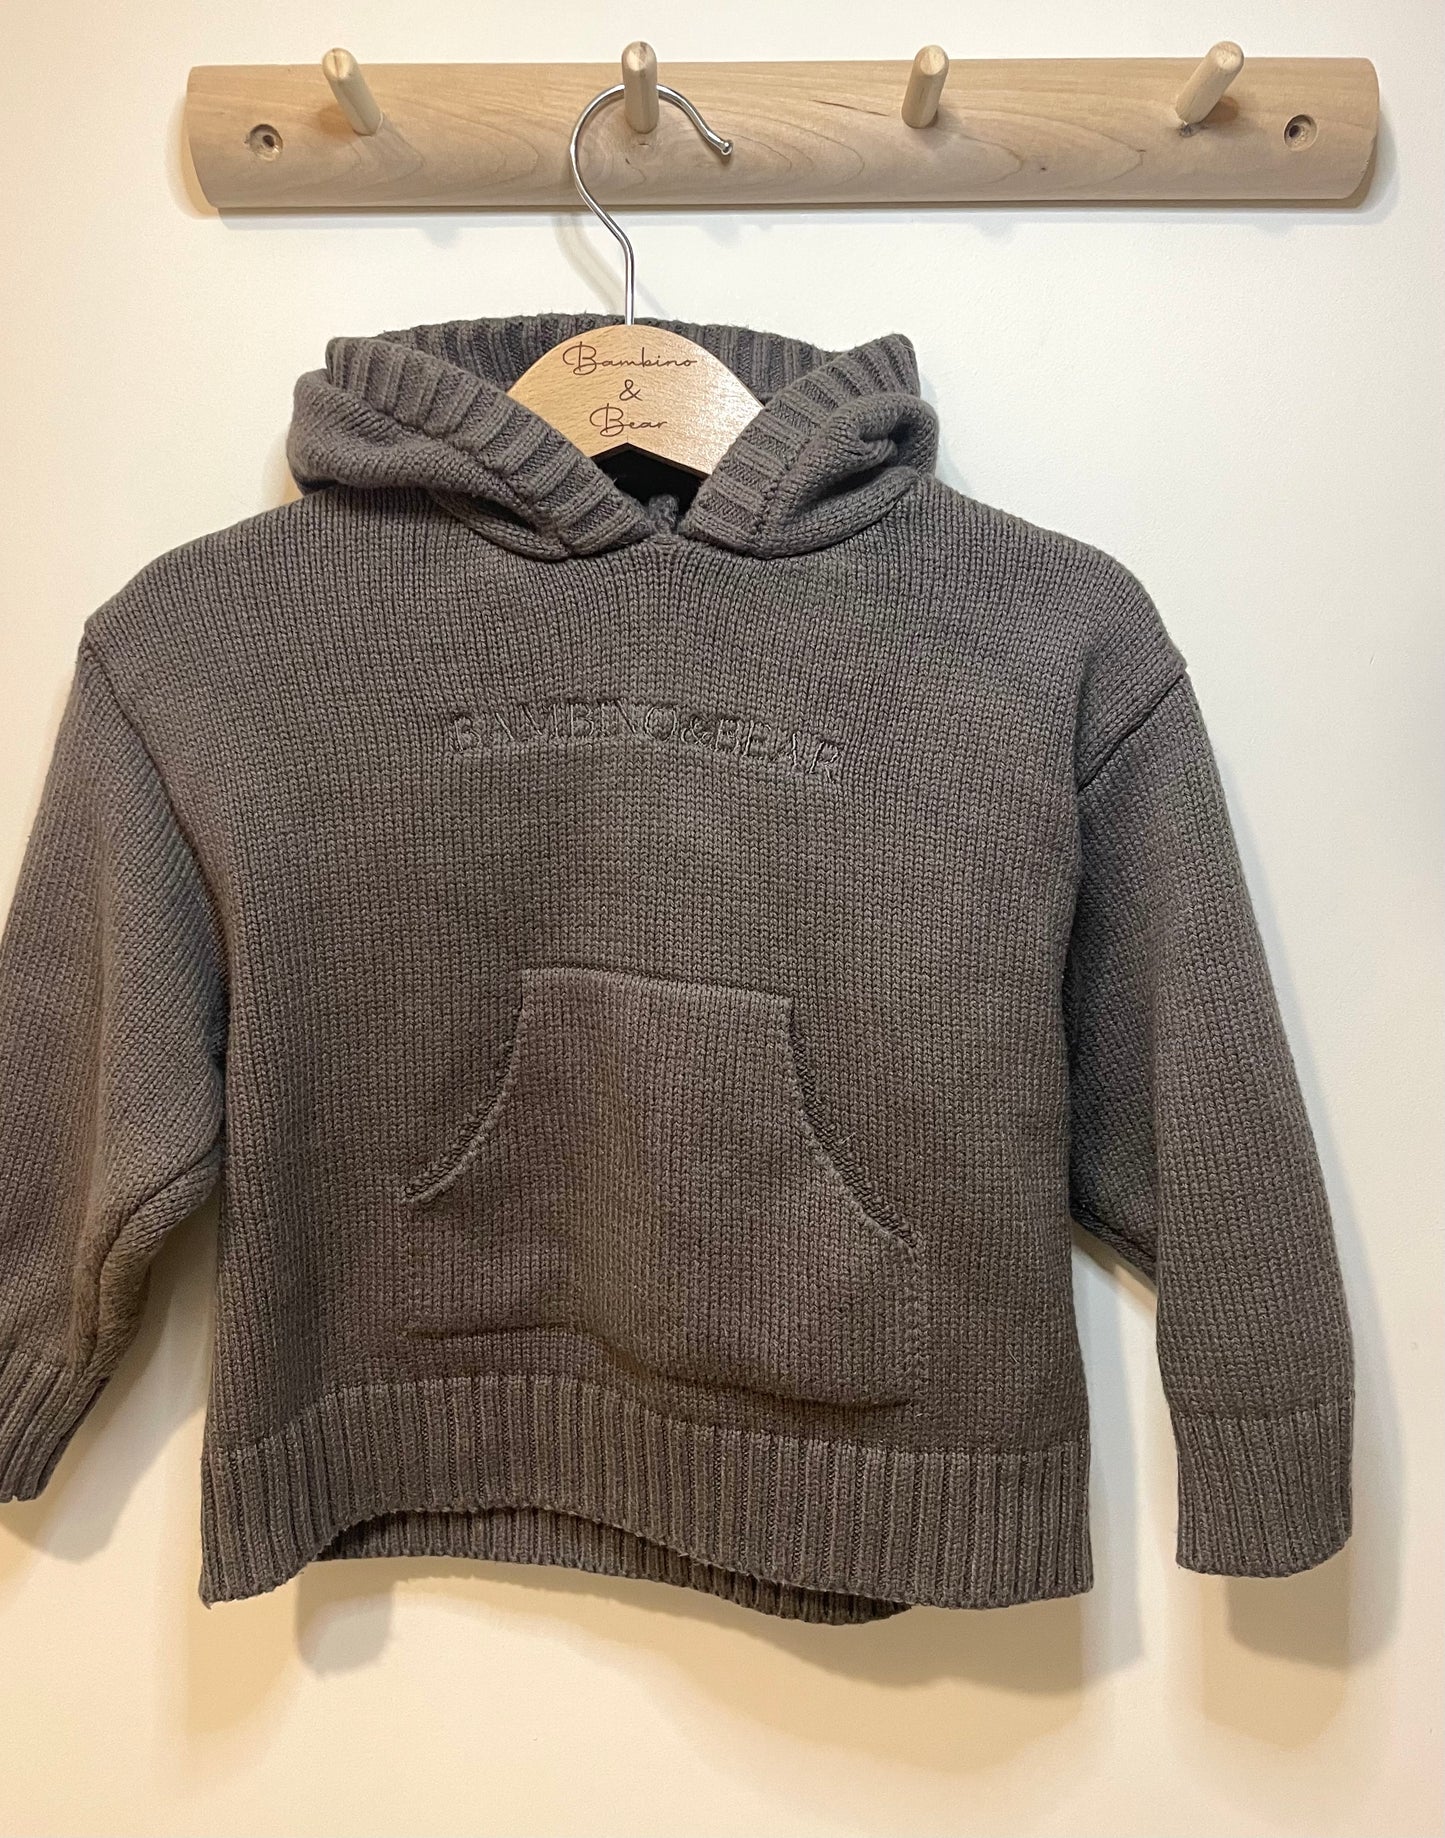 Bambino & bear knitted hoodie